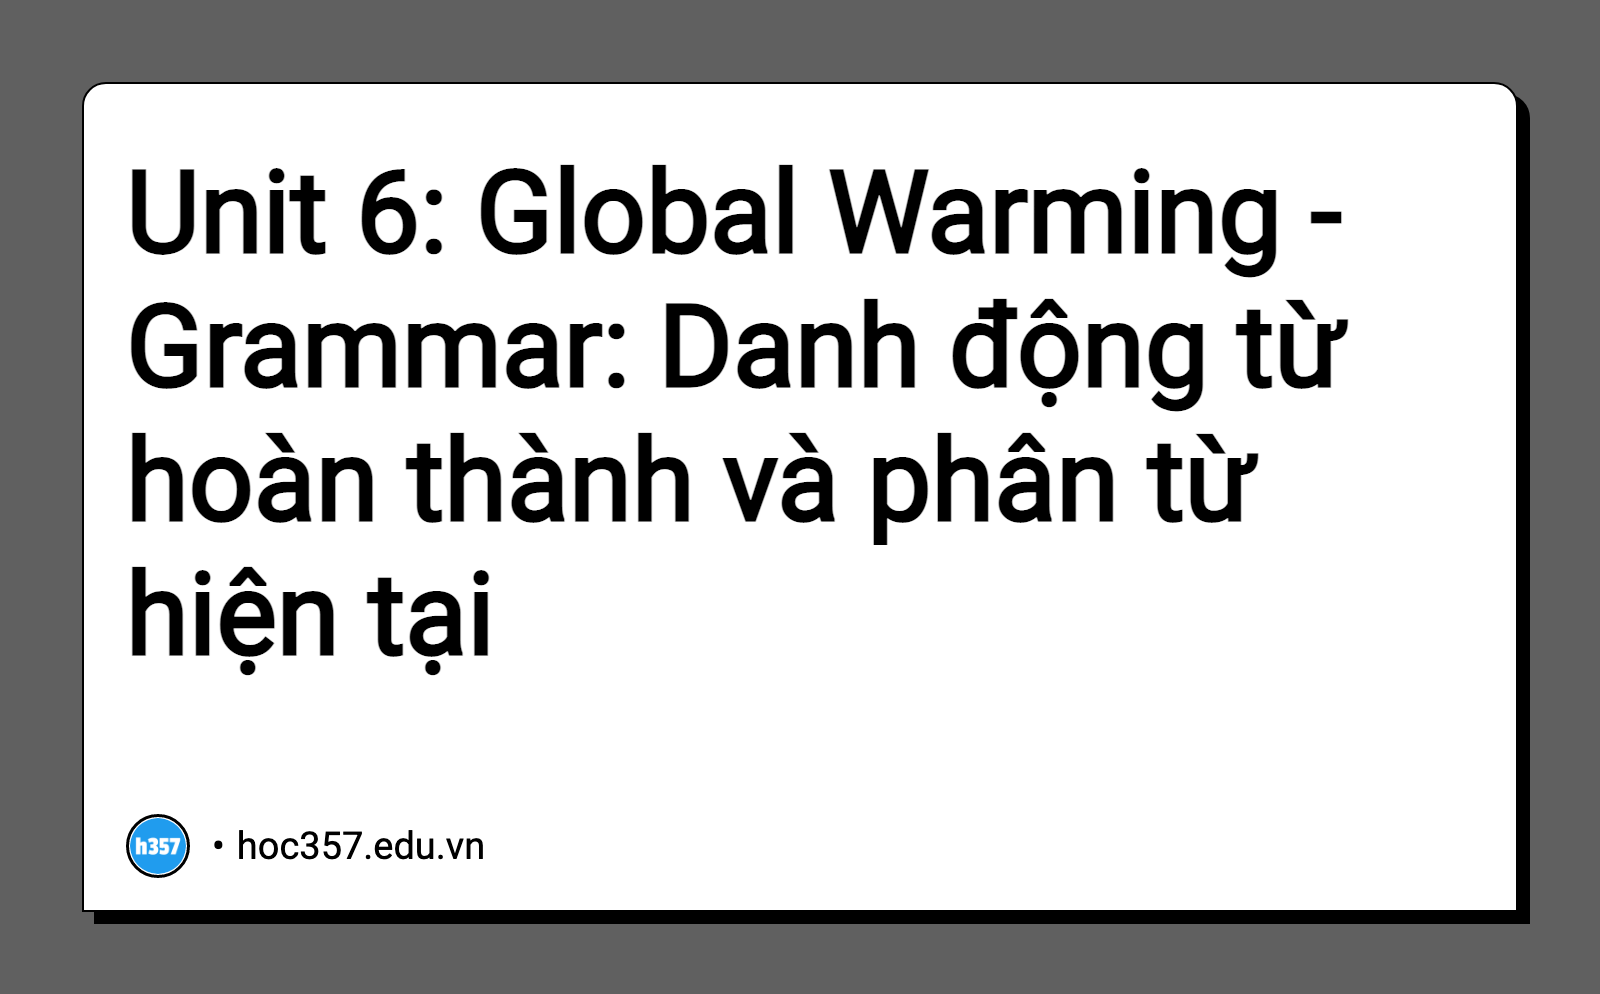 Hình minh họa Unit 6: Global Warming - Grammar: Danh động từ hoàn thành và phân từ hiện tại